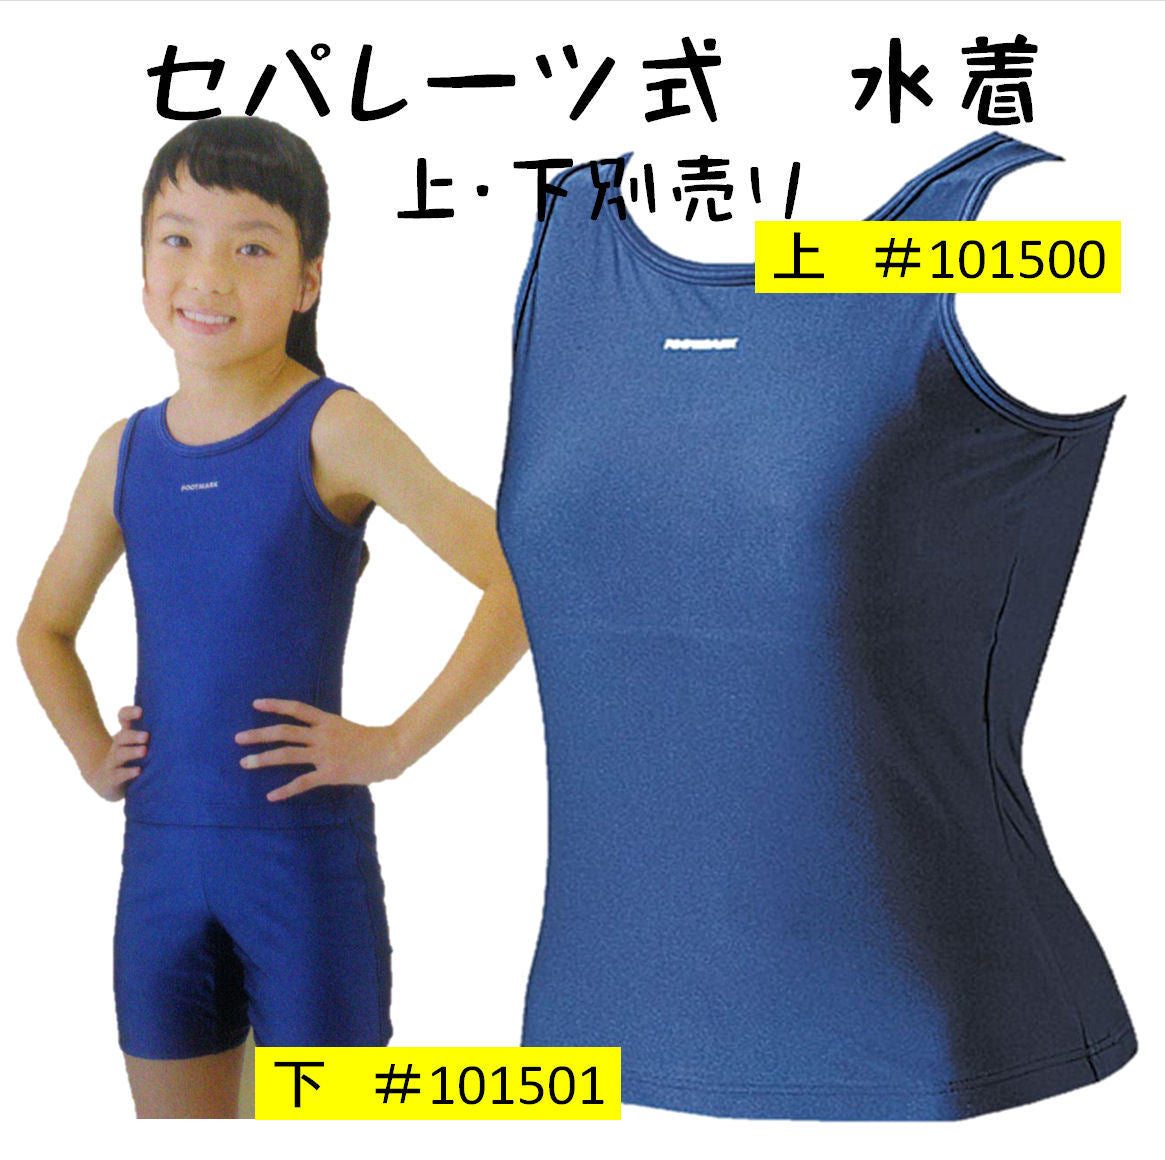 【フットマーク】セパレーツスクール水着 上 101500 紺 競泳型 女子130/140/150サイズ 小中学生用 日本製 水泳用品